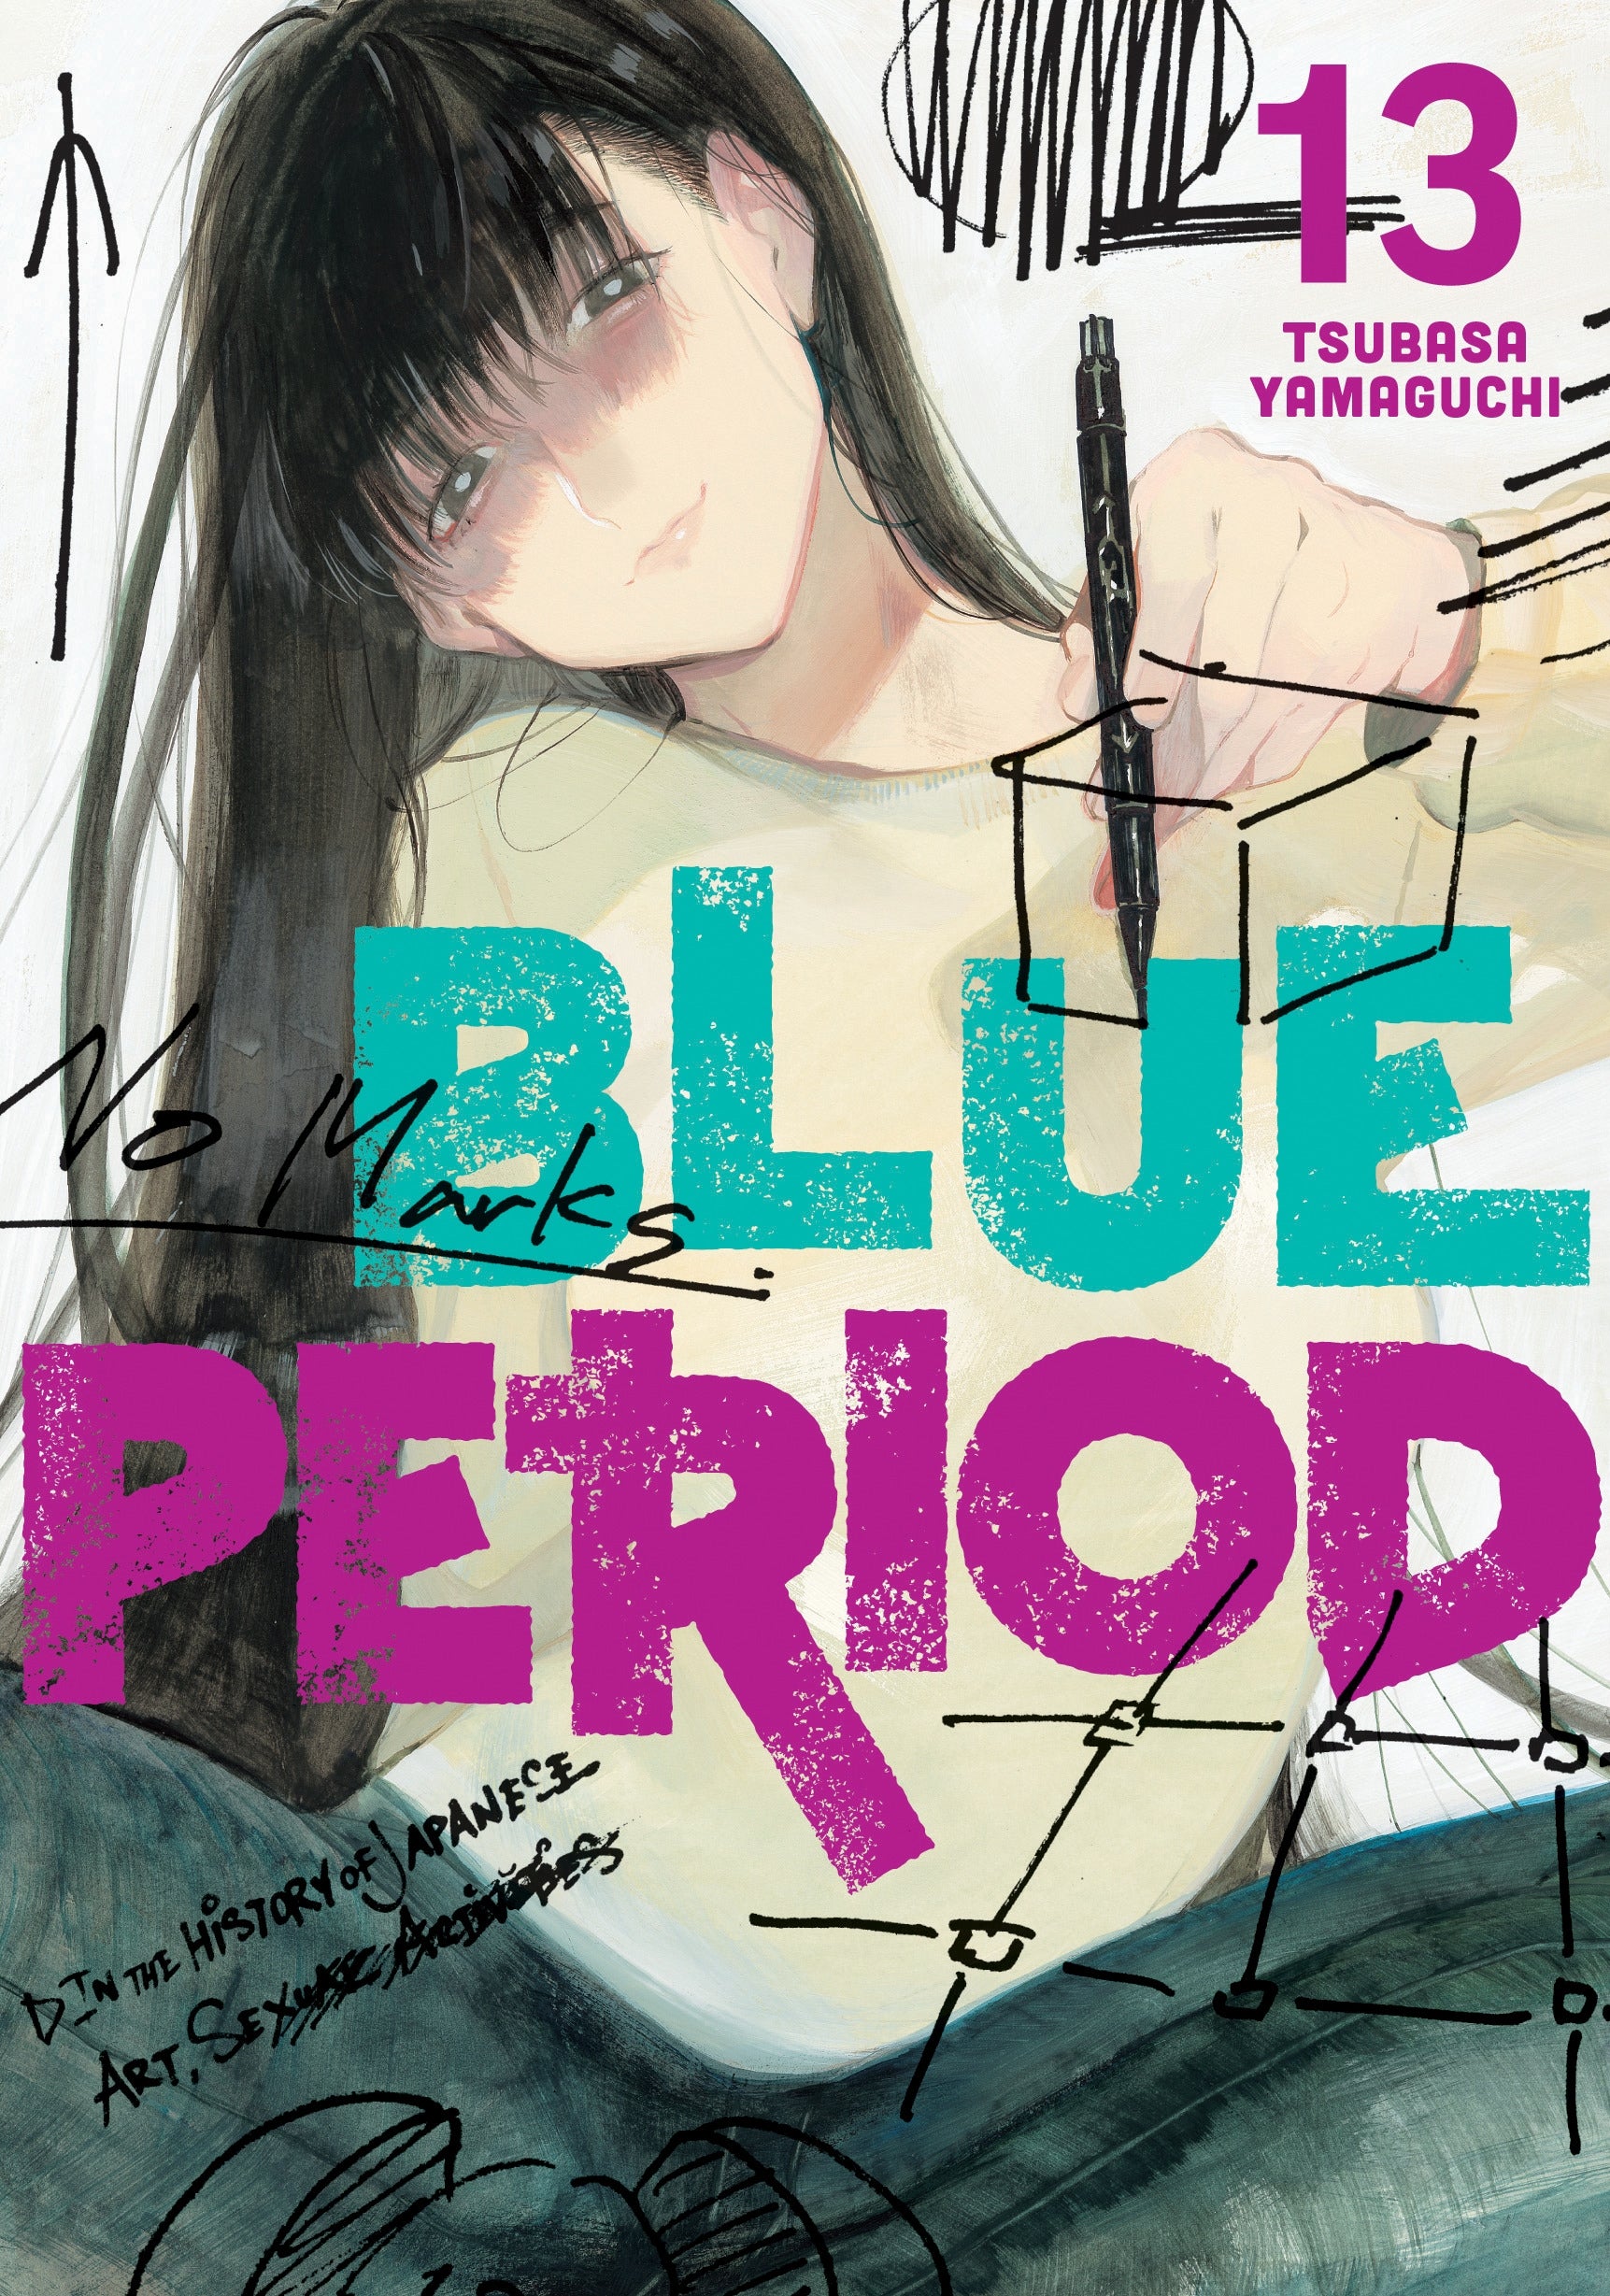 Blue Period, Vol. 13